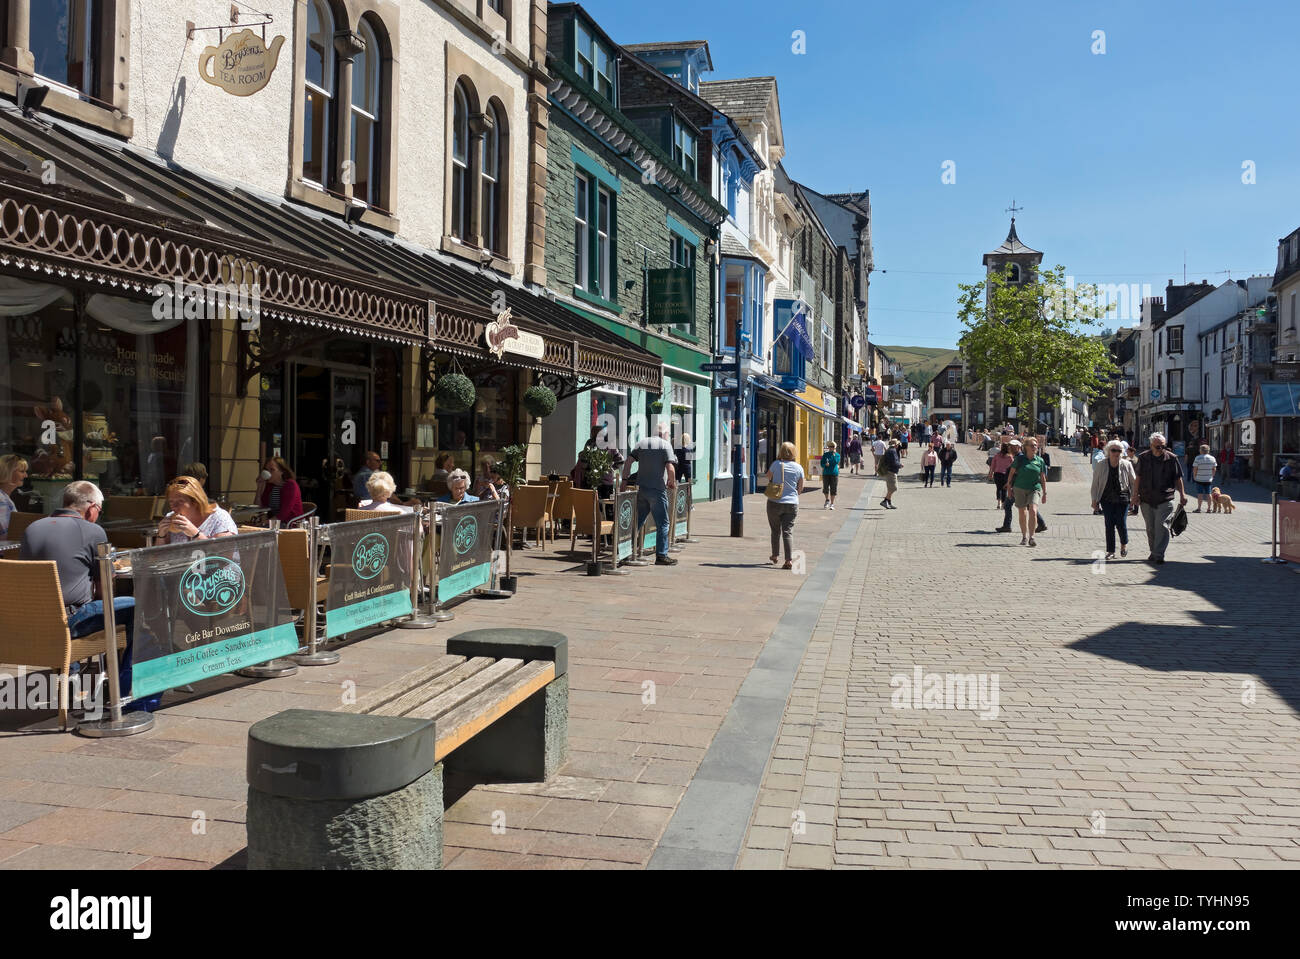 Menschen Besucher Touristen im Stadtzentrum im Sommer Keswick Cumbria England Großbritannien Großbritannien GB Großbritannien Stockfoto